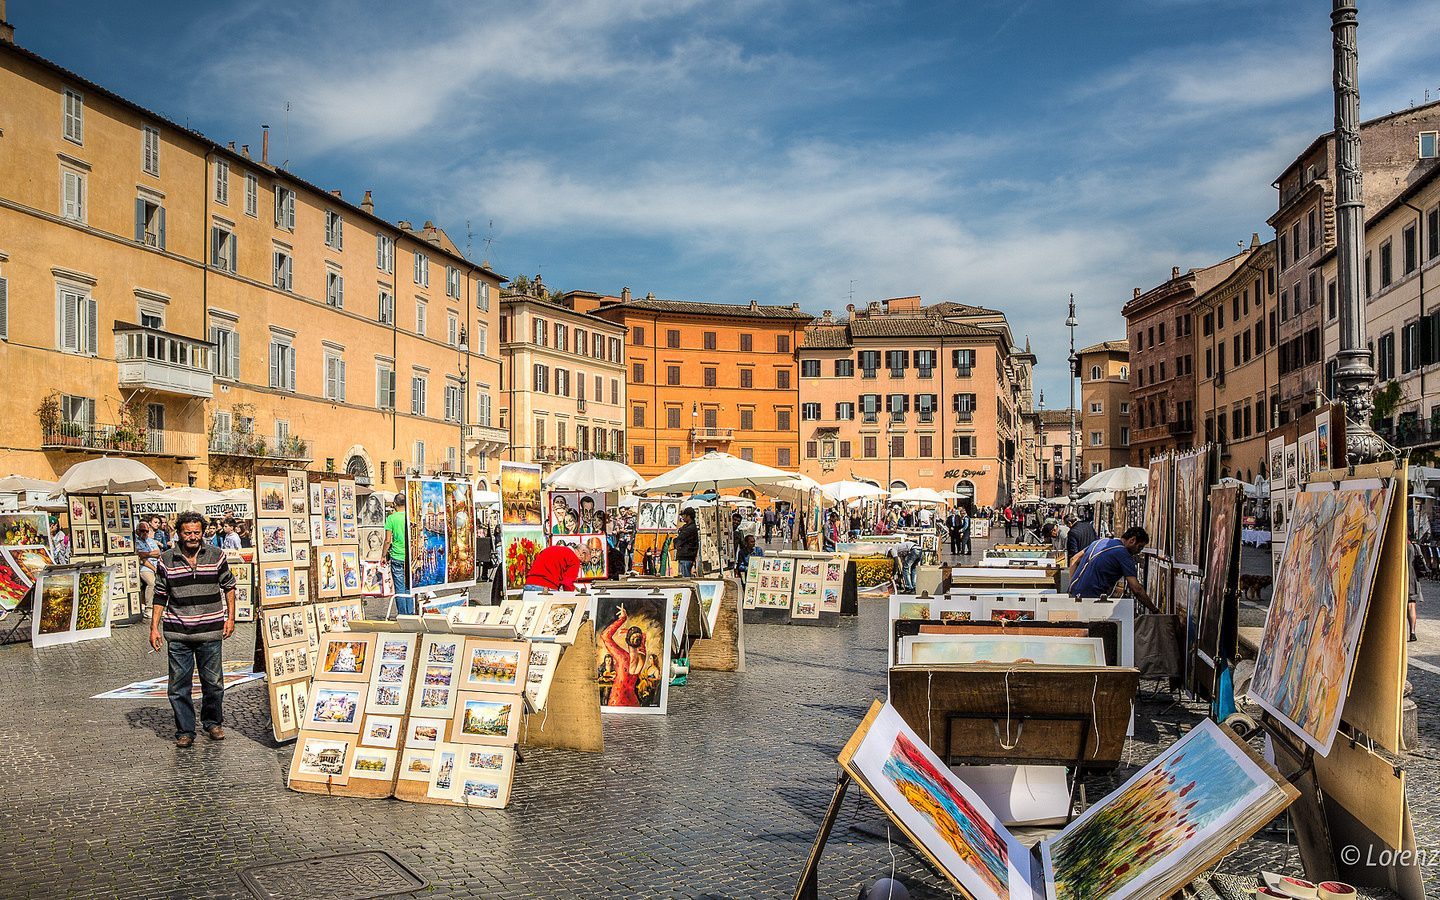 5 Tempat Wisata Paling Menarik Di Italia Yang Wajib Dikunjungi | Artikel